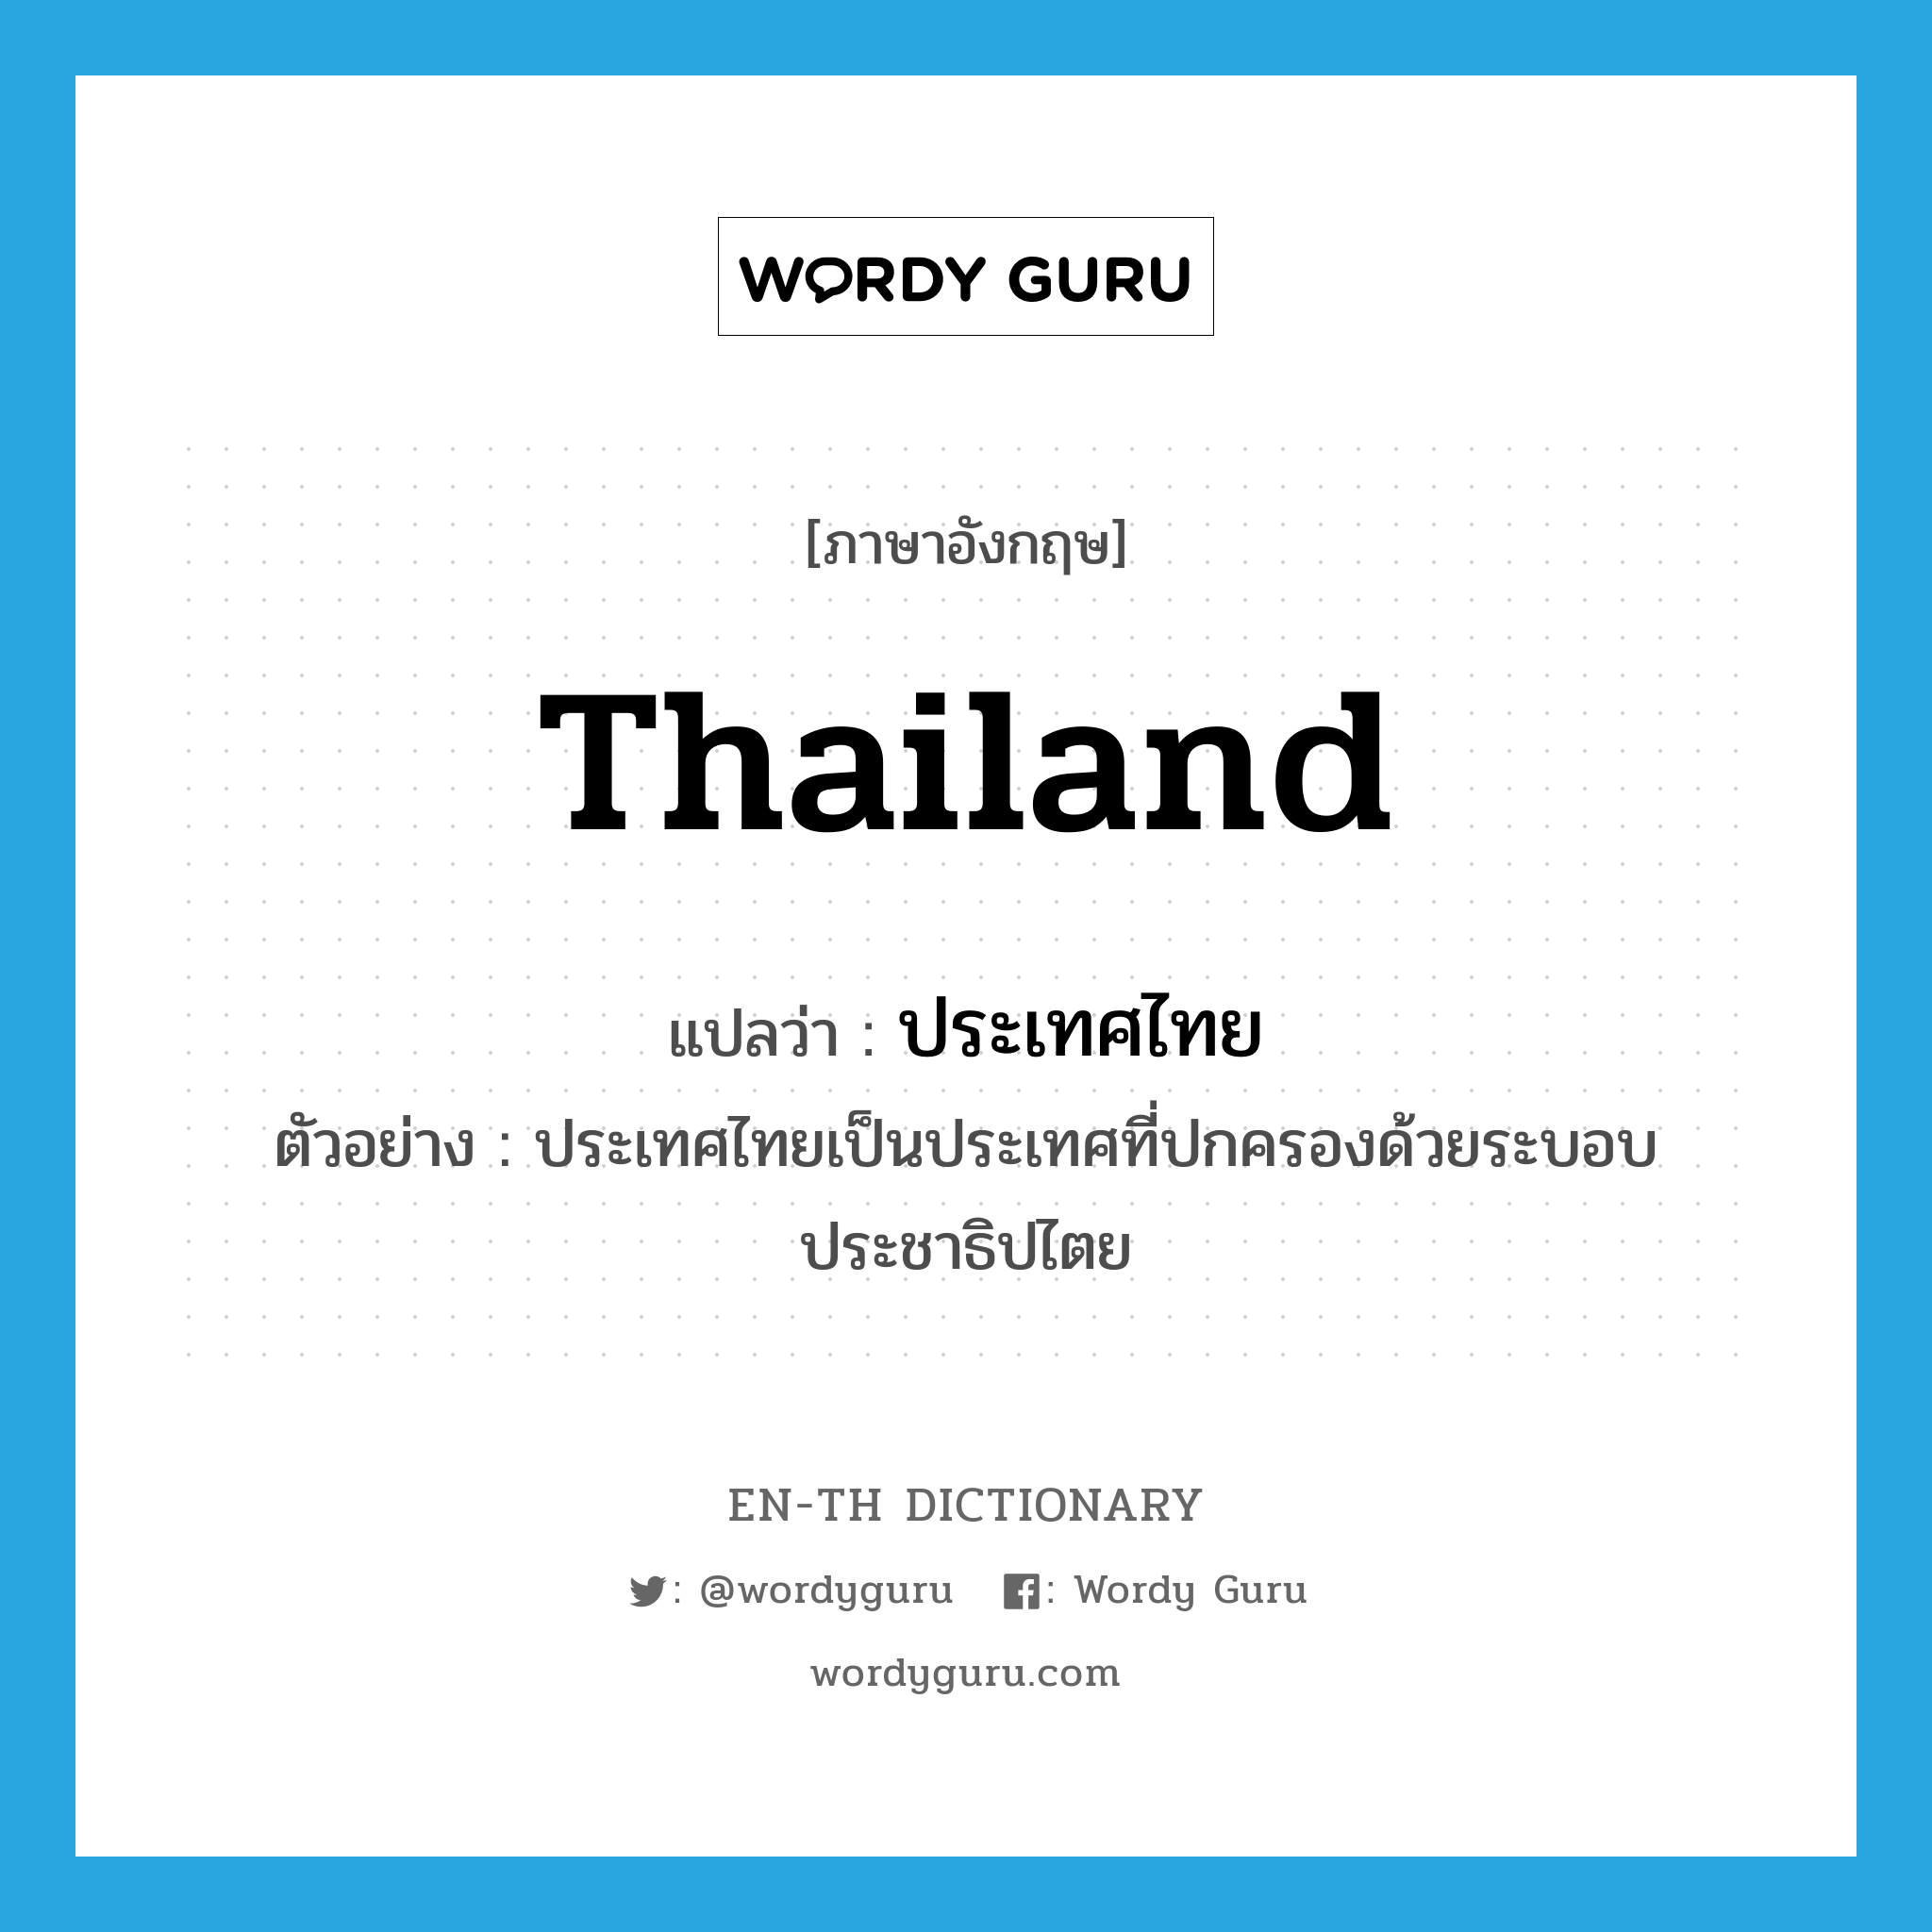 ประเทศไทย ภาษาอังกฤษ?, คำศัพท์ภาษาอังกฤษ ประเทศไทย แปลว่า Thailand ประเภท N ตัวอย่าง ประเทศไทยเป็นประเทศที่ปกครองด้วยระบอบประชาธิปไตย หมวด N